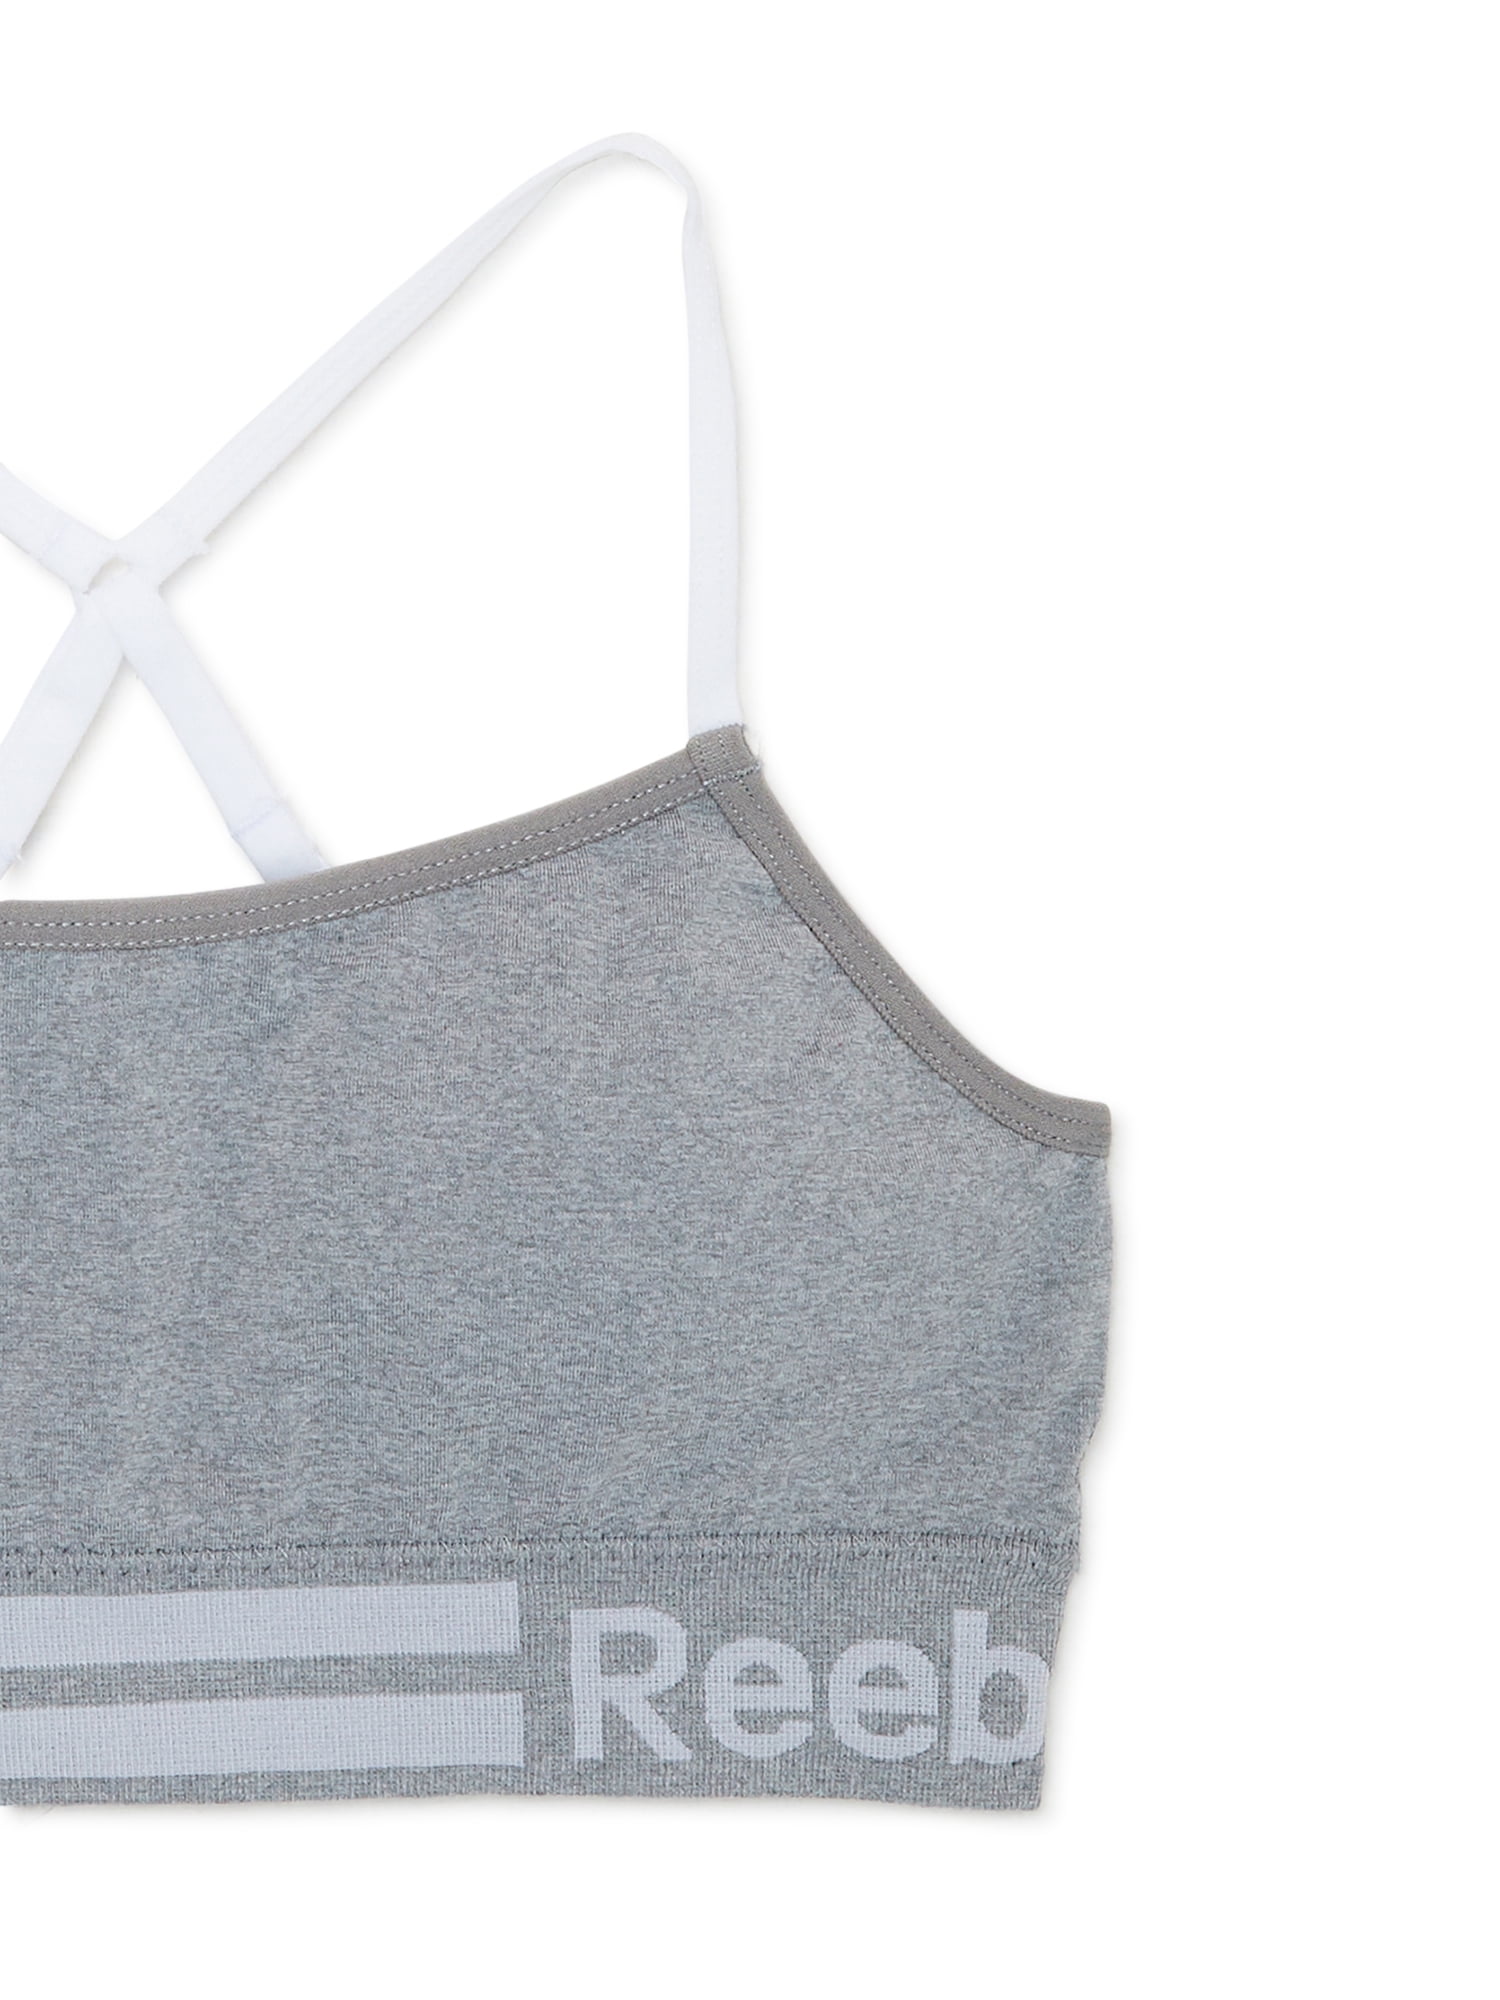 Reebok, Intimates & Sleepwear, Reebok Womens Seamless Longline Bralette 2  Pack Light Gray Stripe Blue Fog L